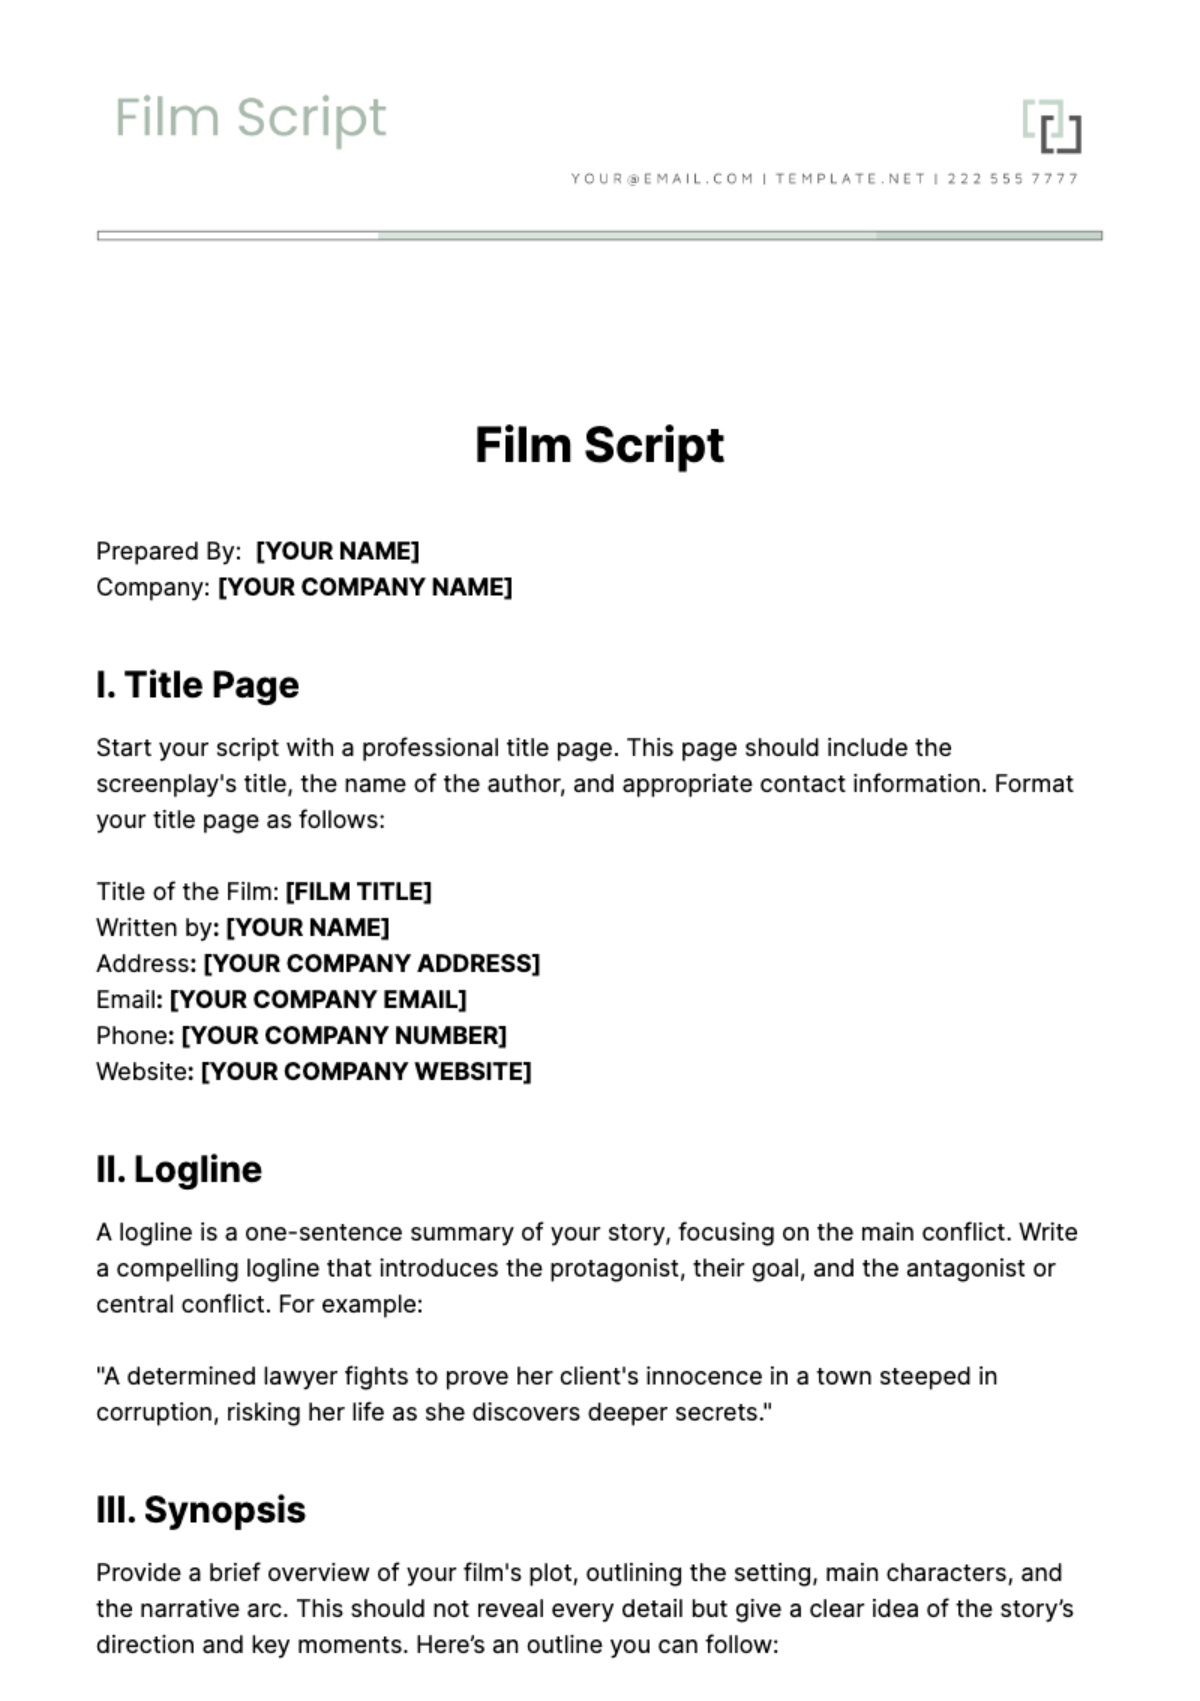 Film Script Template